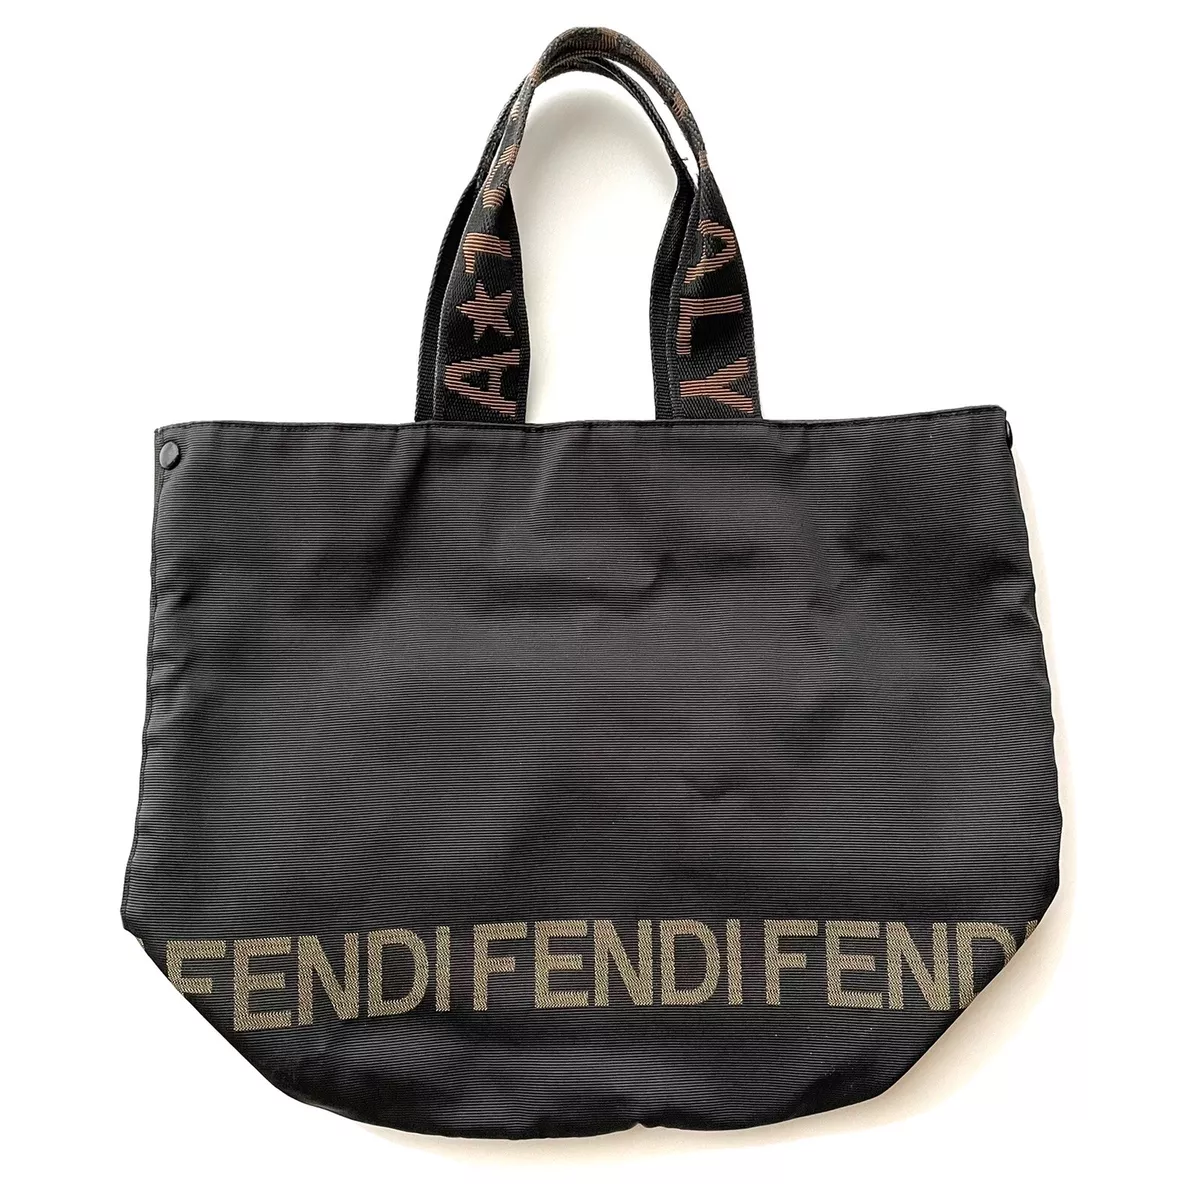 Shop Vintage Fendi Bags, Used Fendi Bags